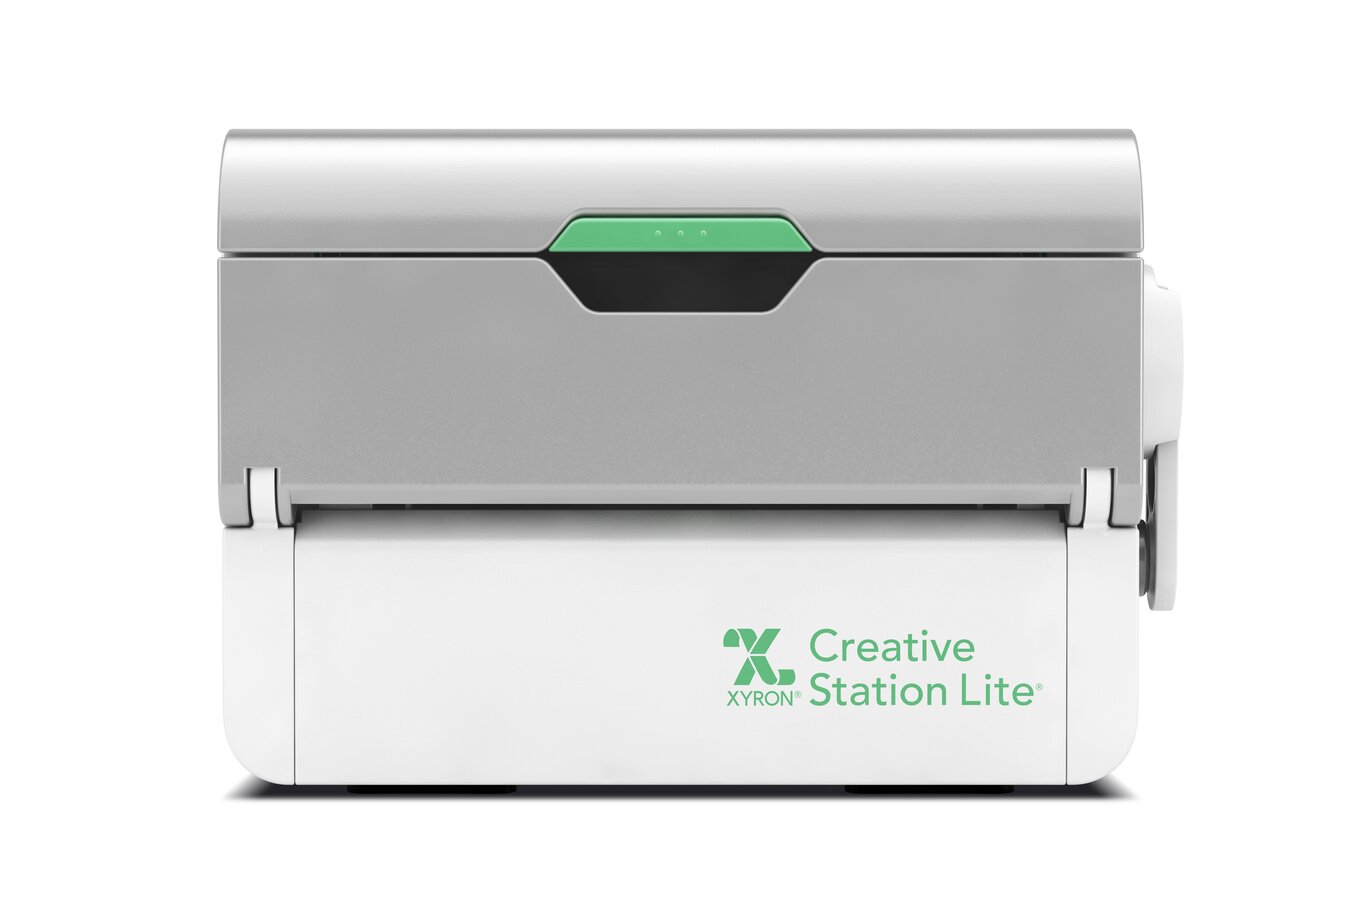 XYRON cassette de recharge pour station Creative